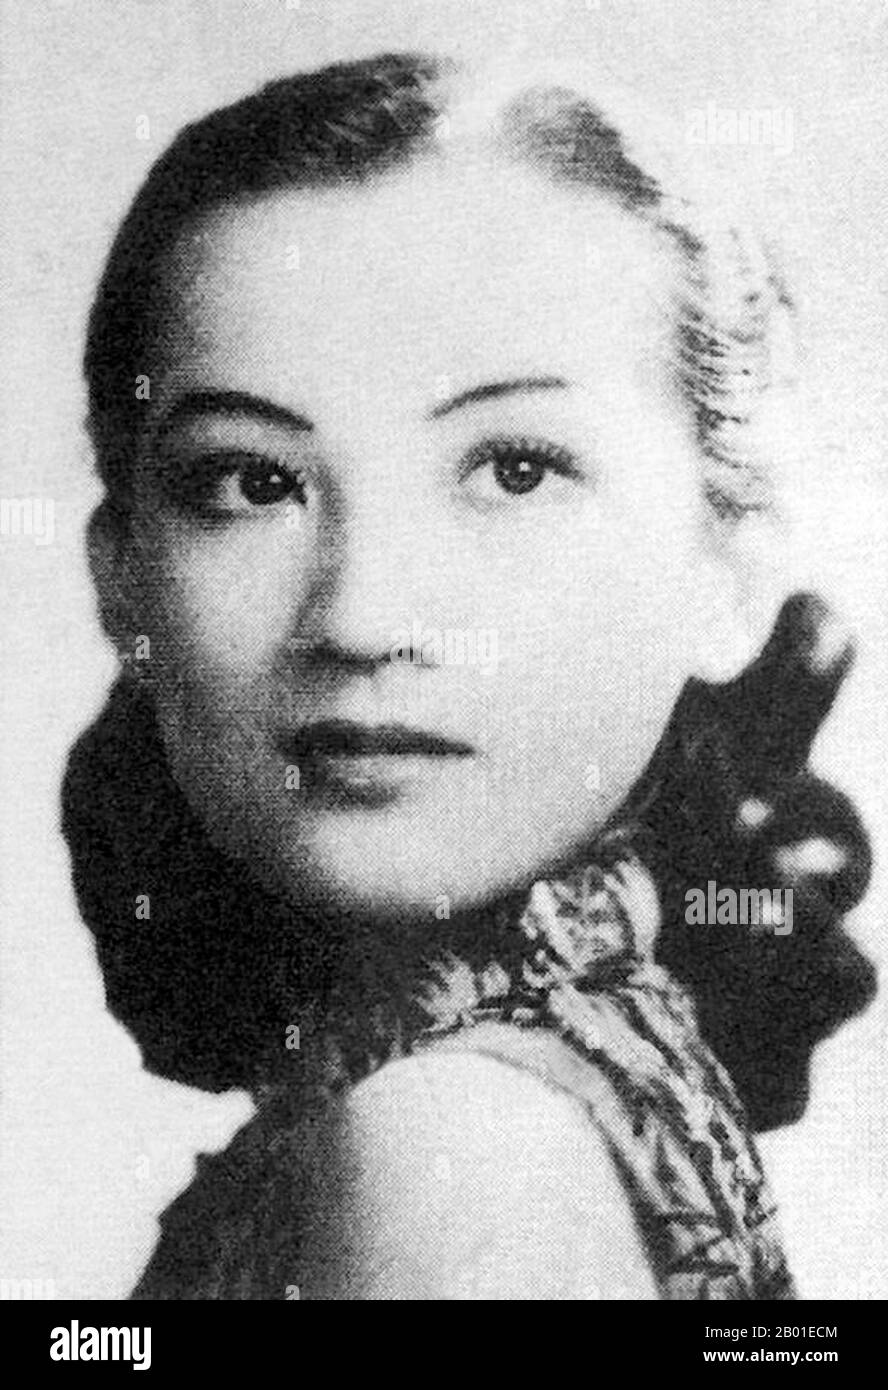 Chine : Zhou Xuan (周璇, 1 août 1918 - 22 septembre 1957), chanteuse et actrice chinoise, 1940. En 1940s, elle était devenue l'une des sept grandes stars du chant en Chine. Elle est probablement la plus connue des sept, car elle a eu une carrière de film simultanée jusqu'en 1953. Zhou est né su pu (蘇璞), mais a été séparé de ses parents naturels à un jeune âge et élevé par des parents adoptifs. Elle a passé toute sa vie à chercher ses parents biologiques, mais sa parenté n'a jamais été établie avant sa mort. À l'âge de 13 ans, elle prit Zhou Xuan comme nom de scène, 'Xuan' signifiant 'belle jade'. Banque D'Images